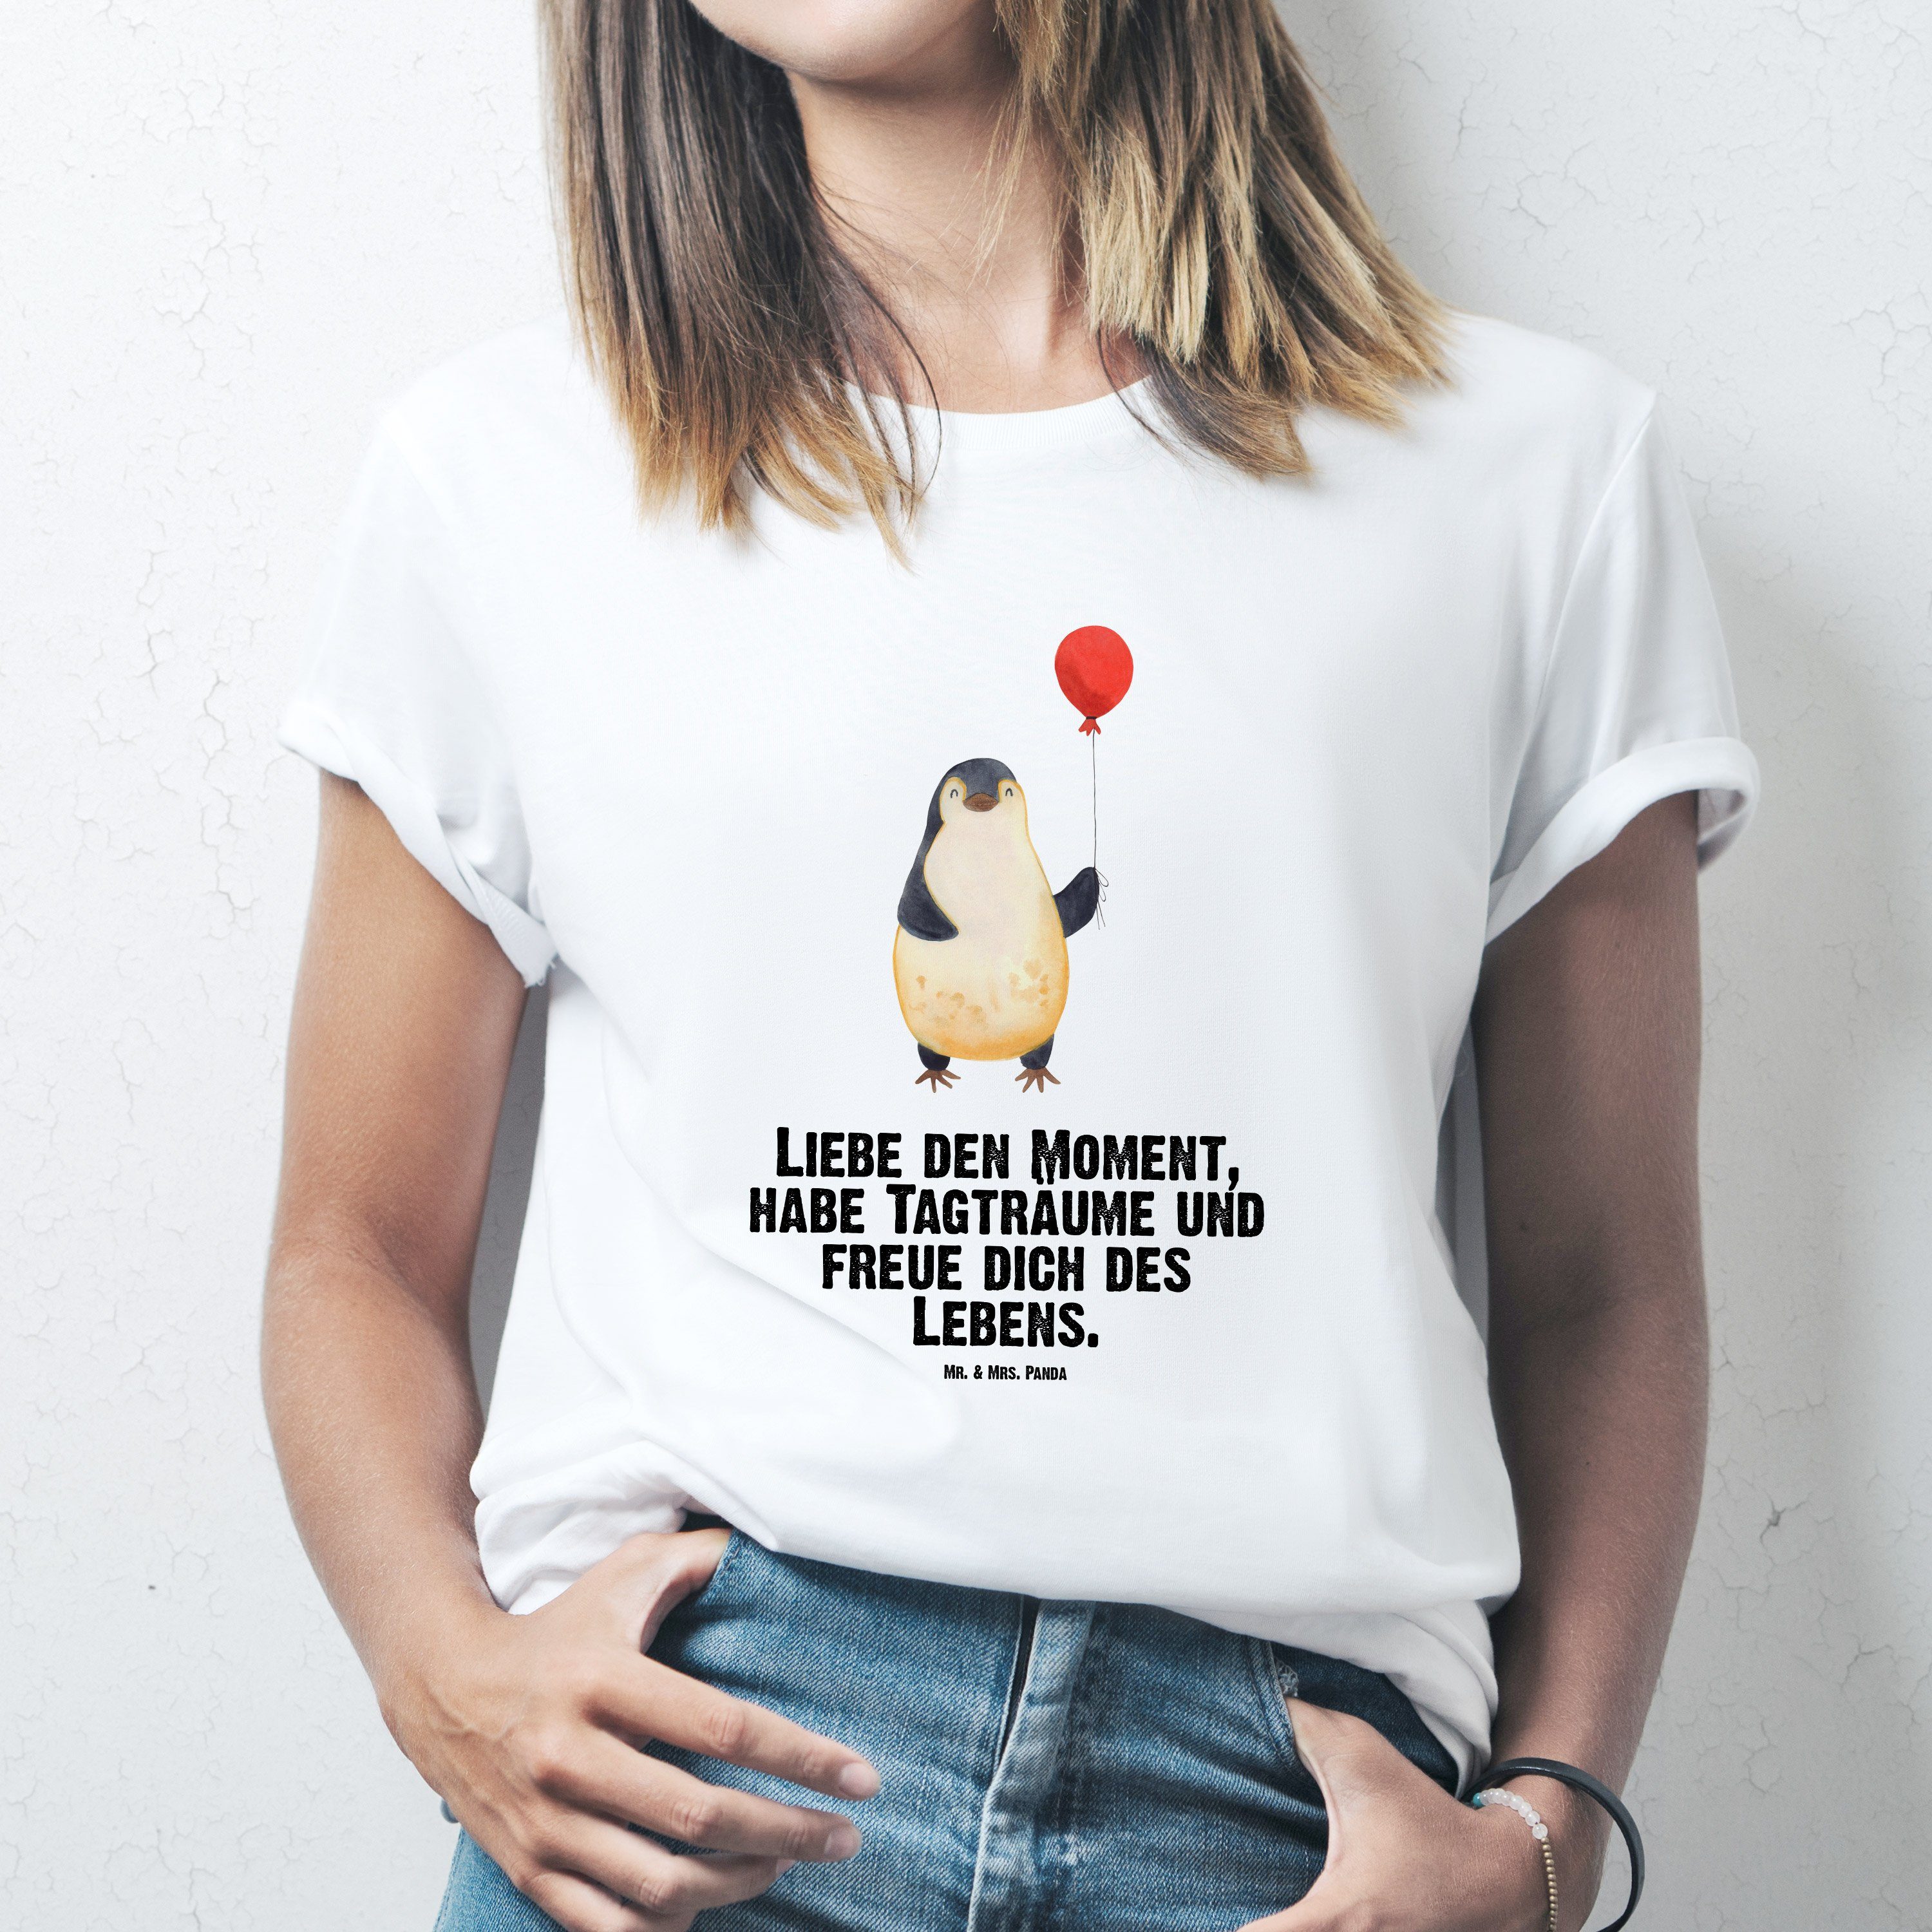 https://i.otto.de/i/otto/a053f4f2-952c-58fe-962b-d6153750dc39/mr-mrs-panda-t-shirt-pinguin-luftballon-weiss-geschenk-shirt-tshirt-pinguine-jungge-1-tlg-weiss.jpg?$formatz$